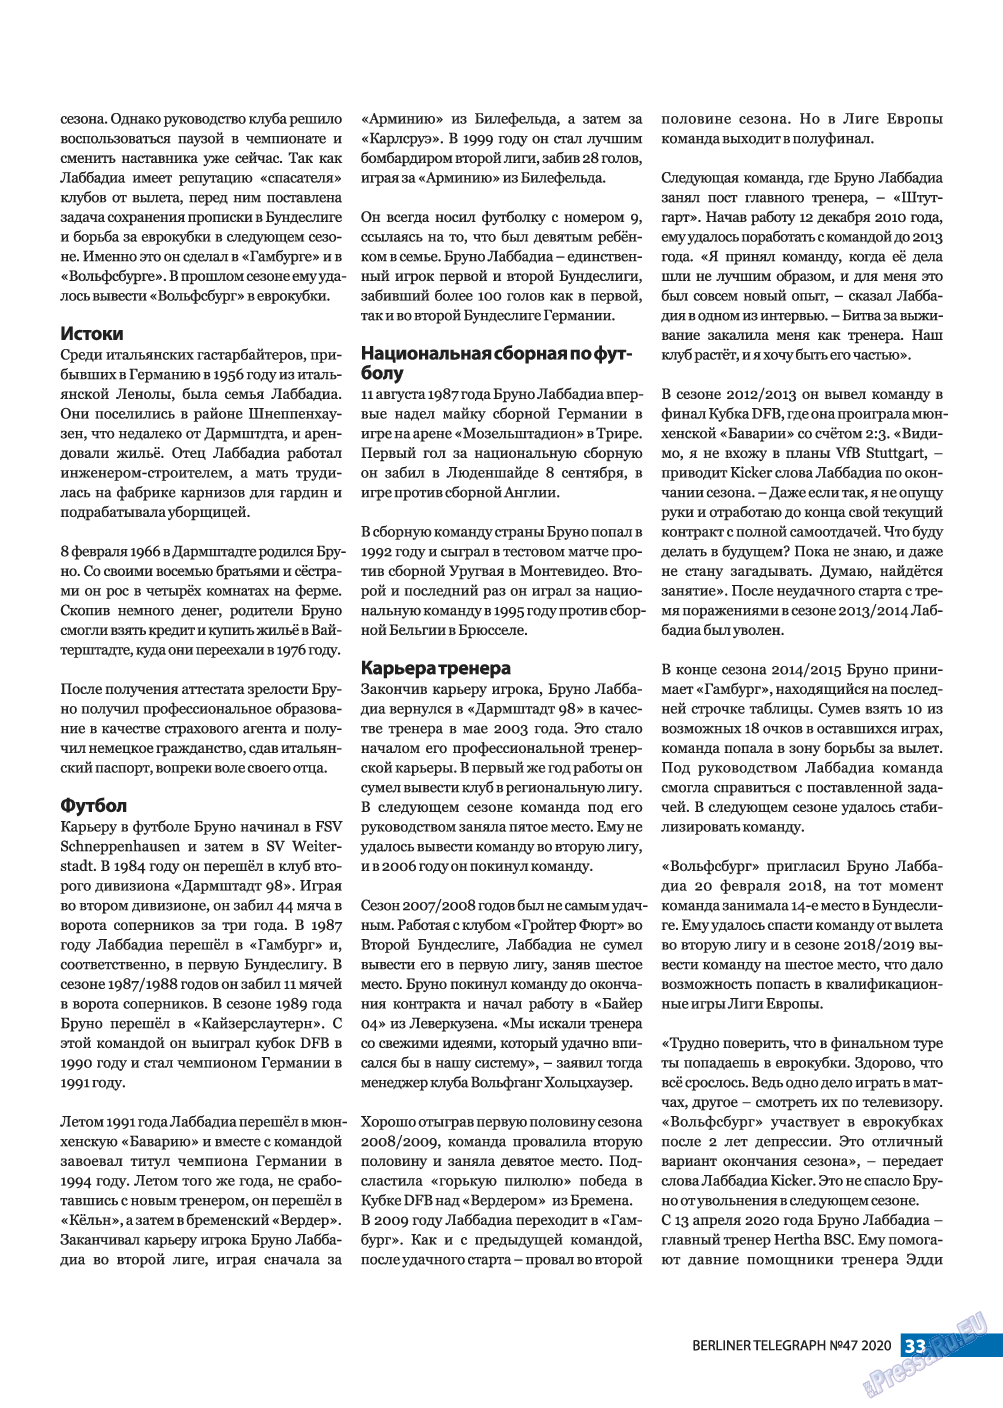 Берлинский телеграф, журнал. 2020 №47 стр.33